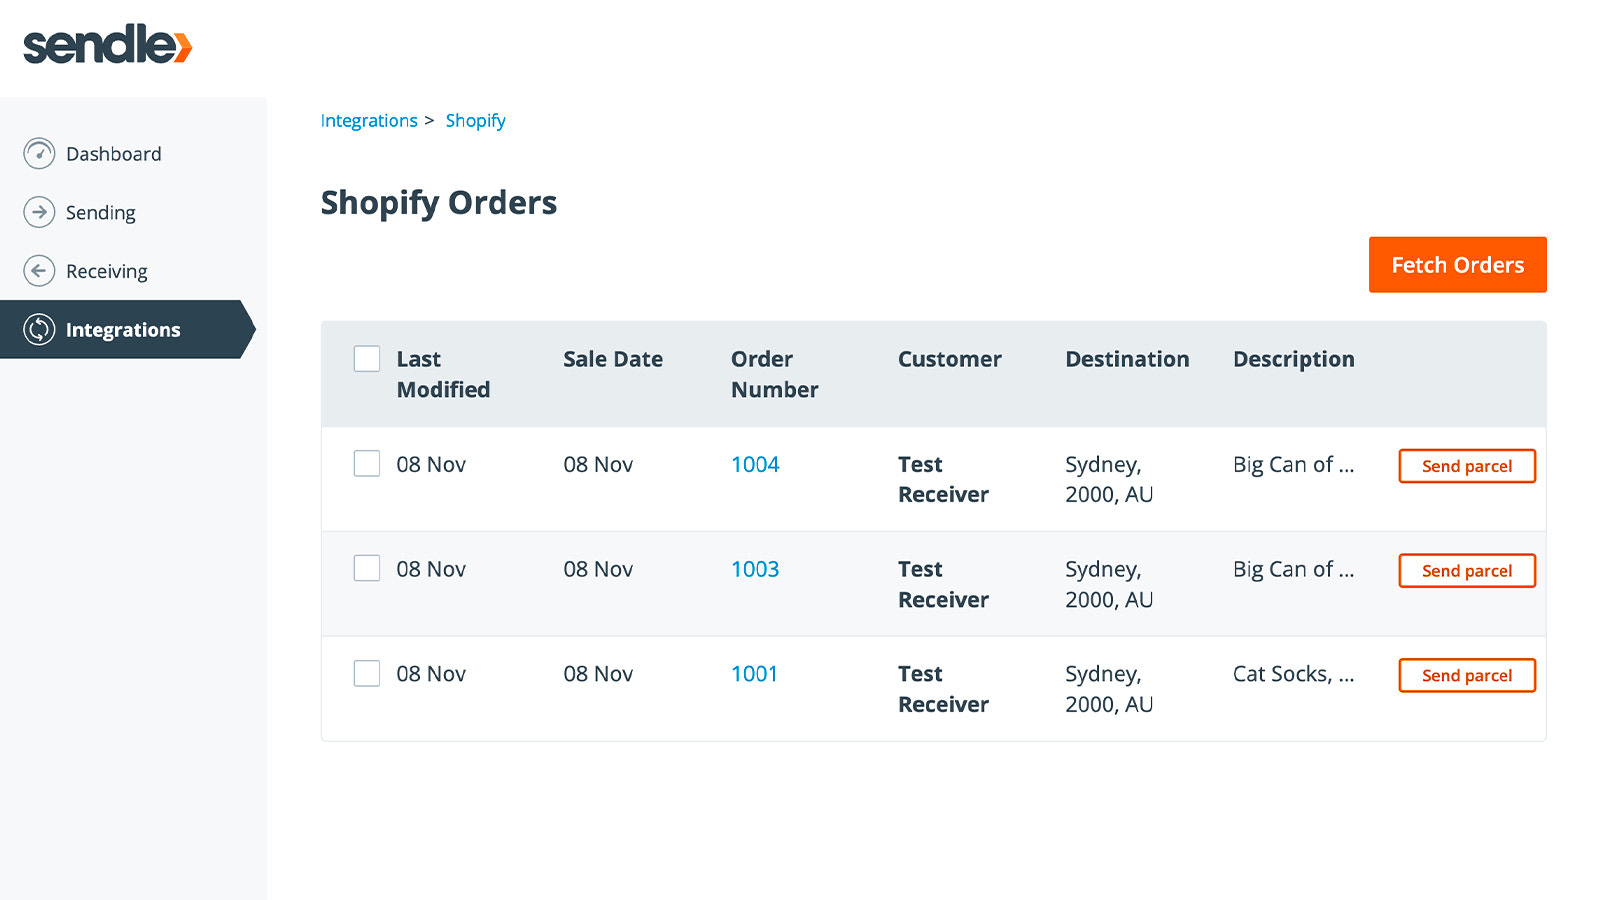 Captura de pantalla mostrando la página de integración de Shopify en Sendle.